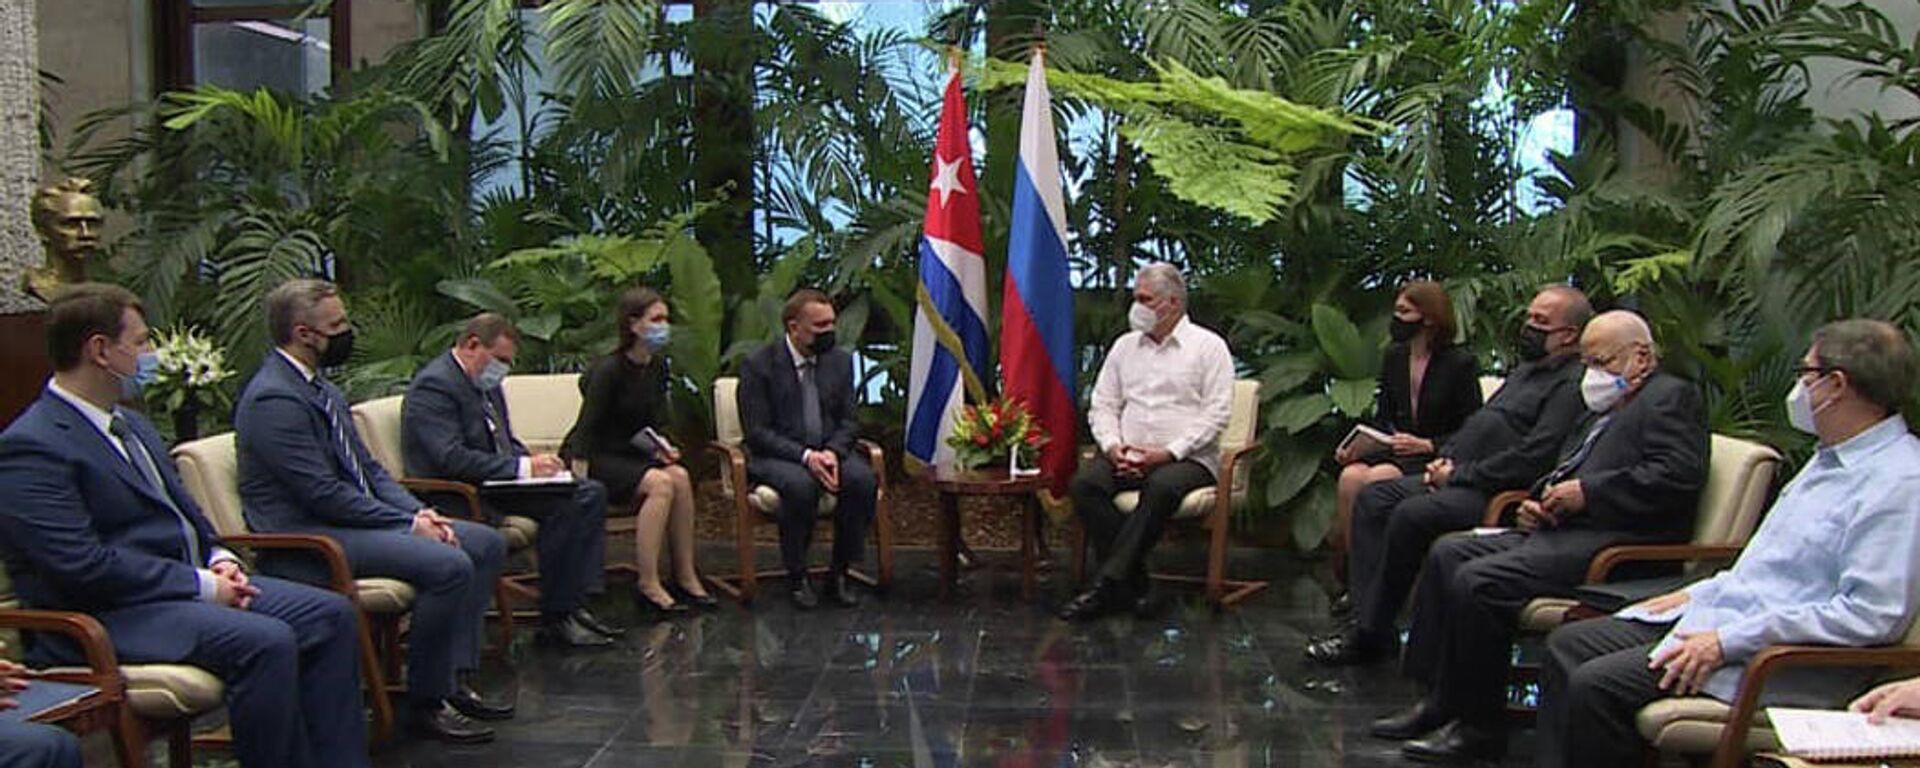 El presidente cubano Miguel Díaz-Canel recibió al vice primer ministro ruso Yuri Borísov - Sputnik Mundo, 1920, 01.04.2021